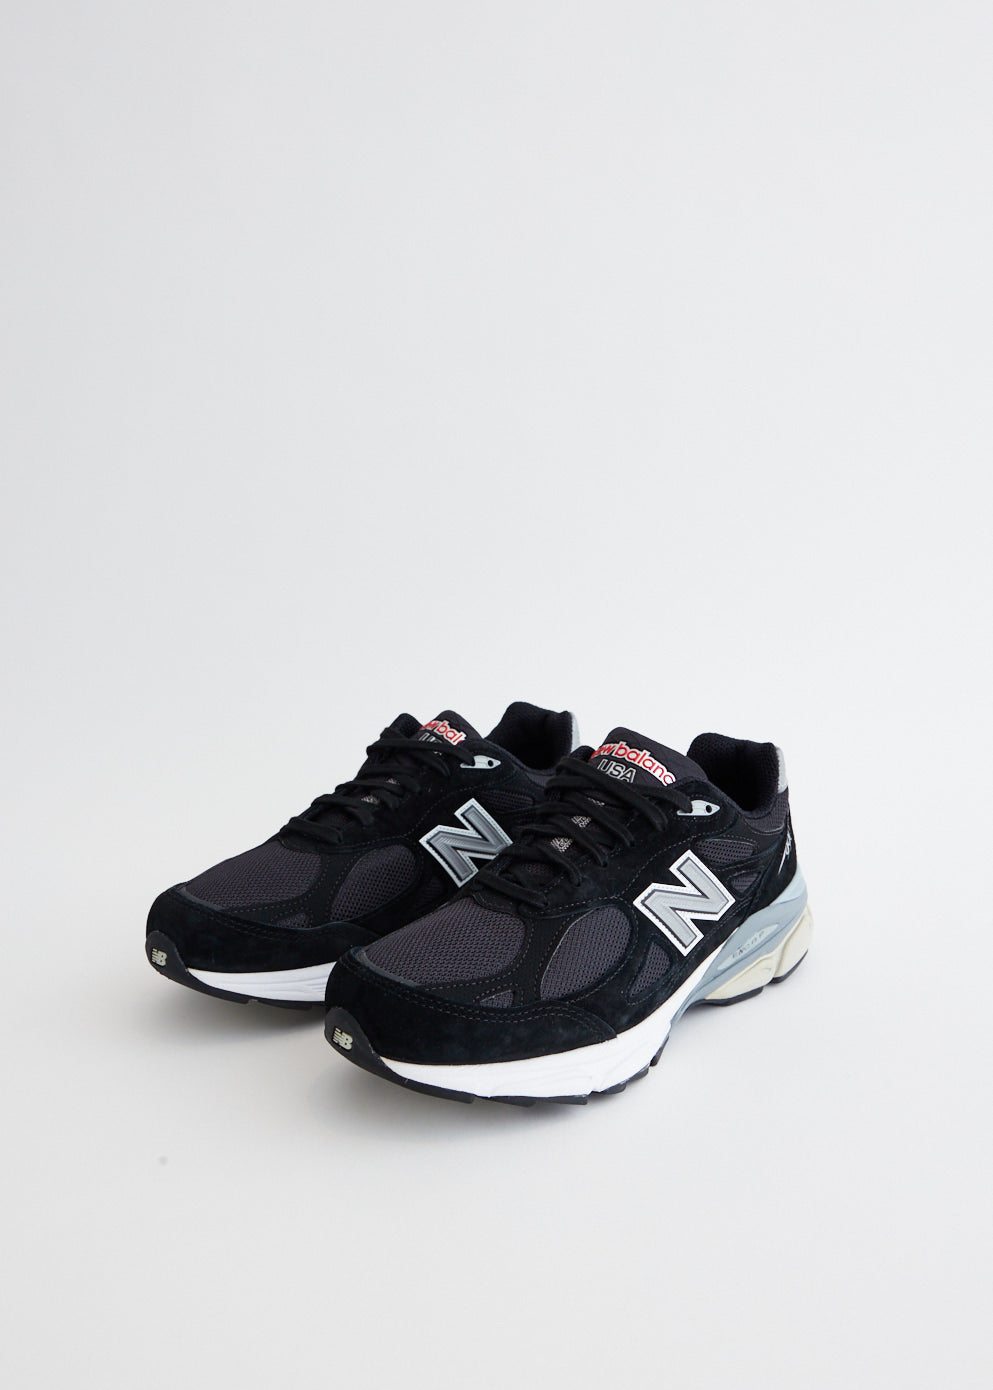 990v3 'Black' Sneakers